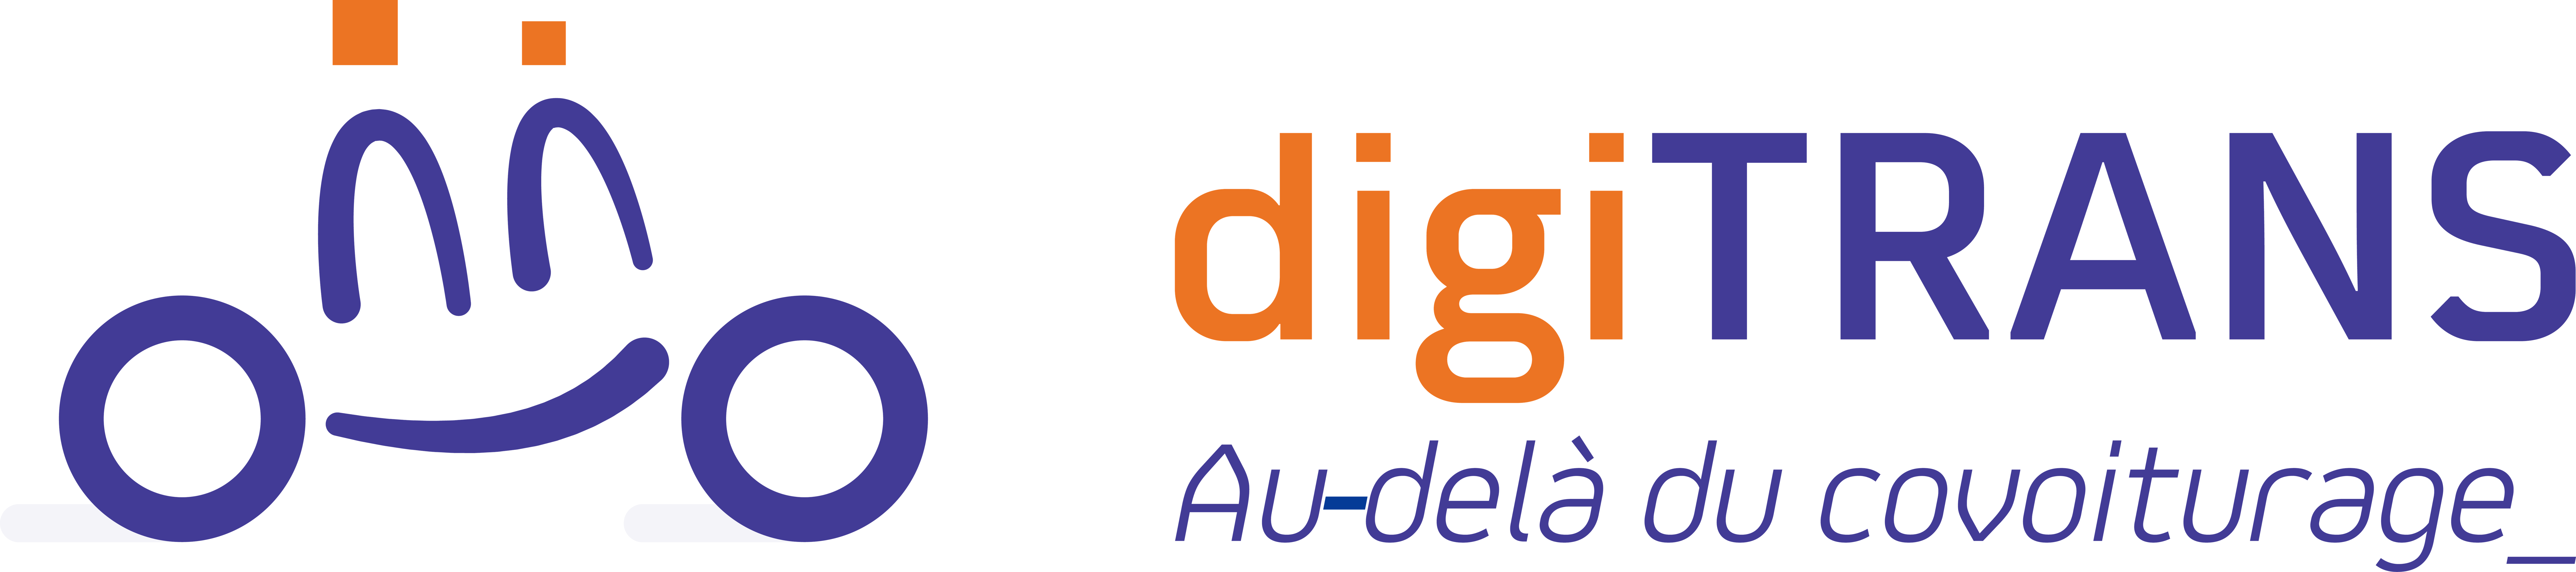 logo-header-digitrans.png
